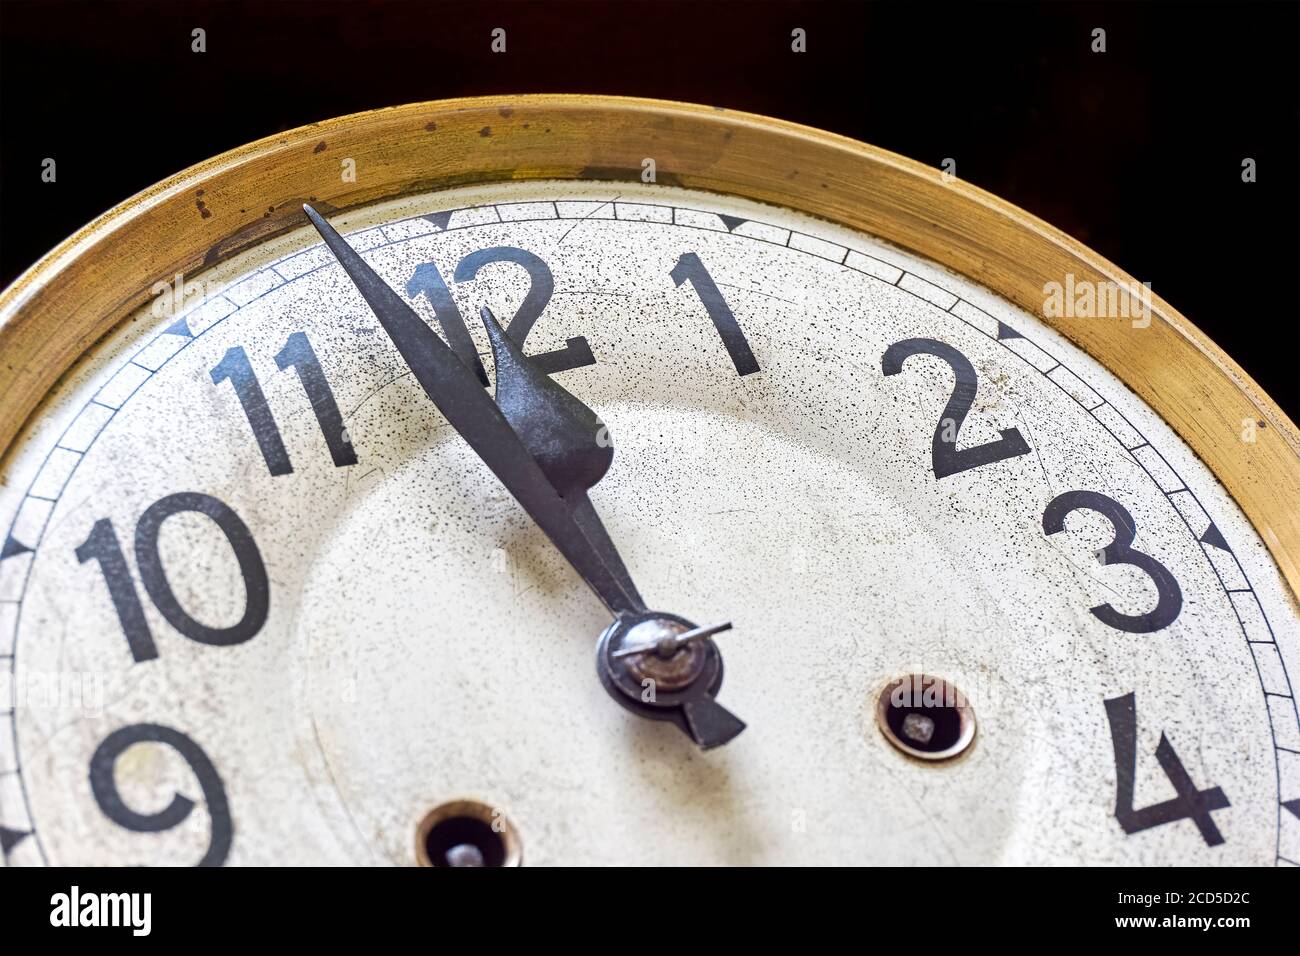 L'horloge ancienne affiche 2 minutes à 12 heures sur fond noir. Concept de la veille du nouvel an ou du compte à rebours. Banque D'Images